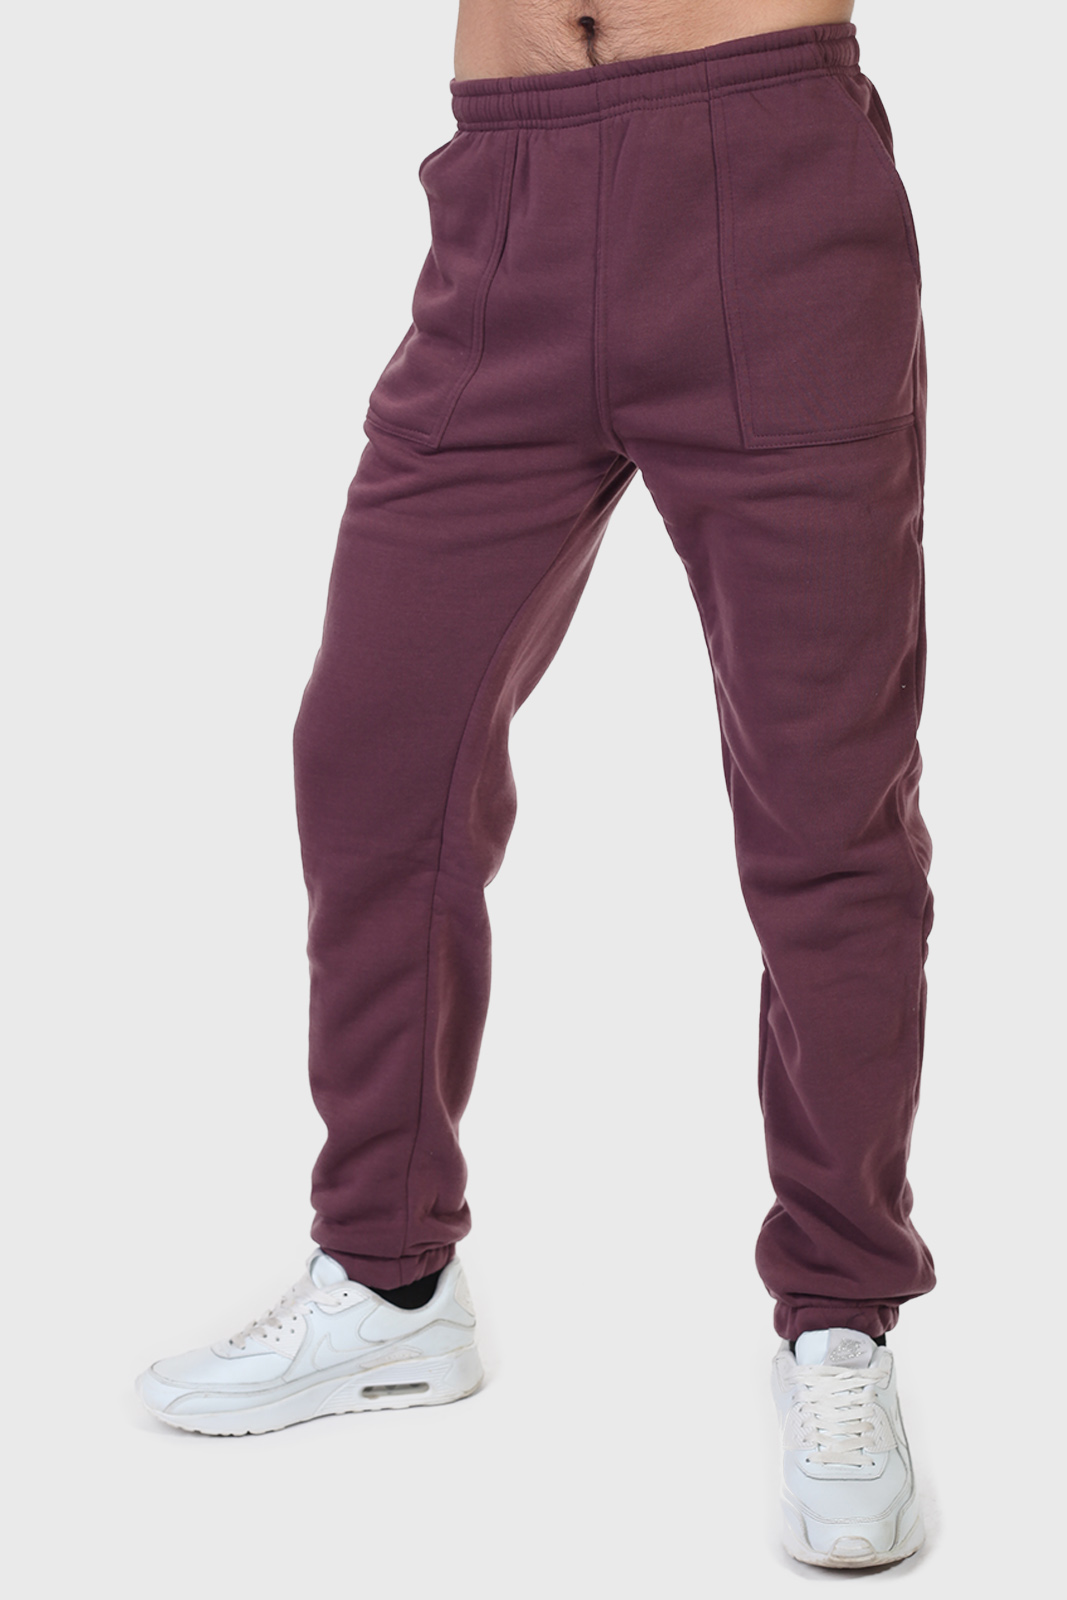 Утепленные спортивные мужские штаны на флисе (Lowes, Австралия)